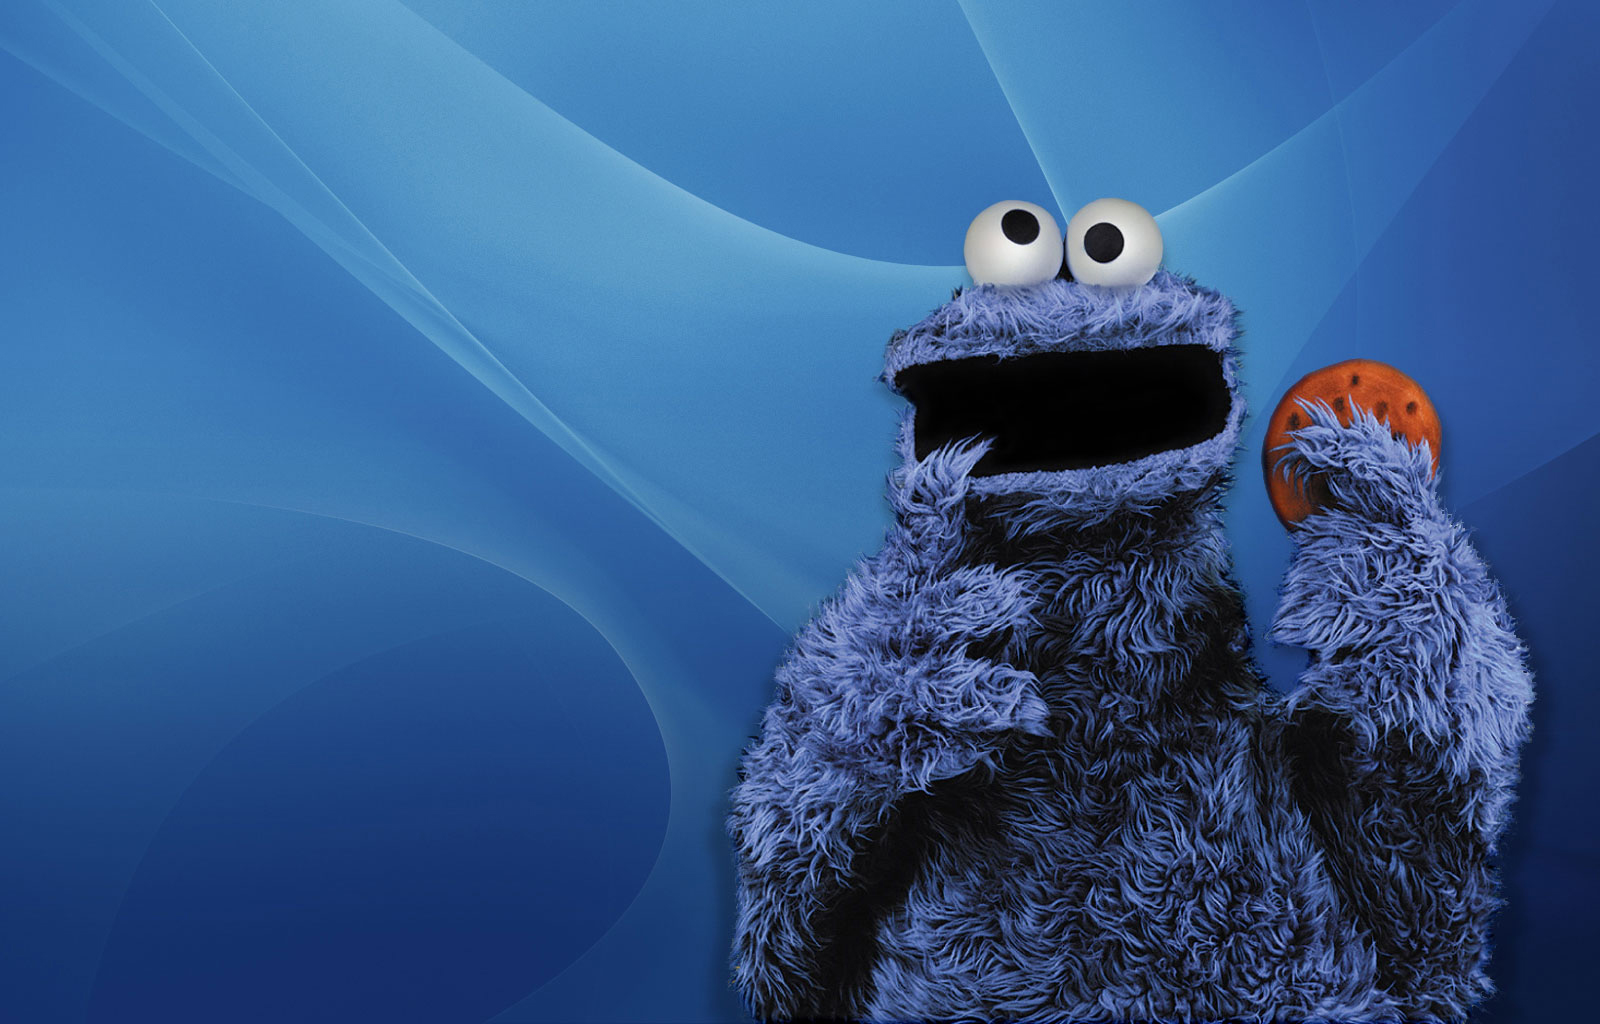 Wallpapers Cookie Monster Cookiemonster 1600x1024 | #588537 ...